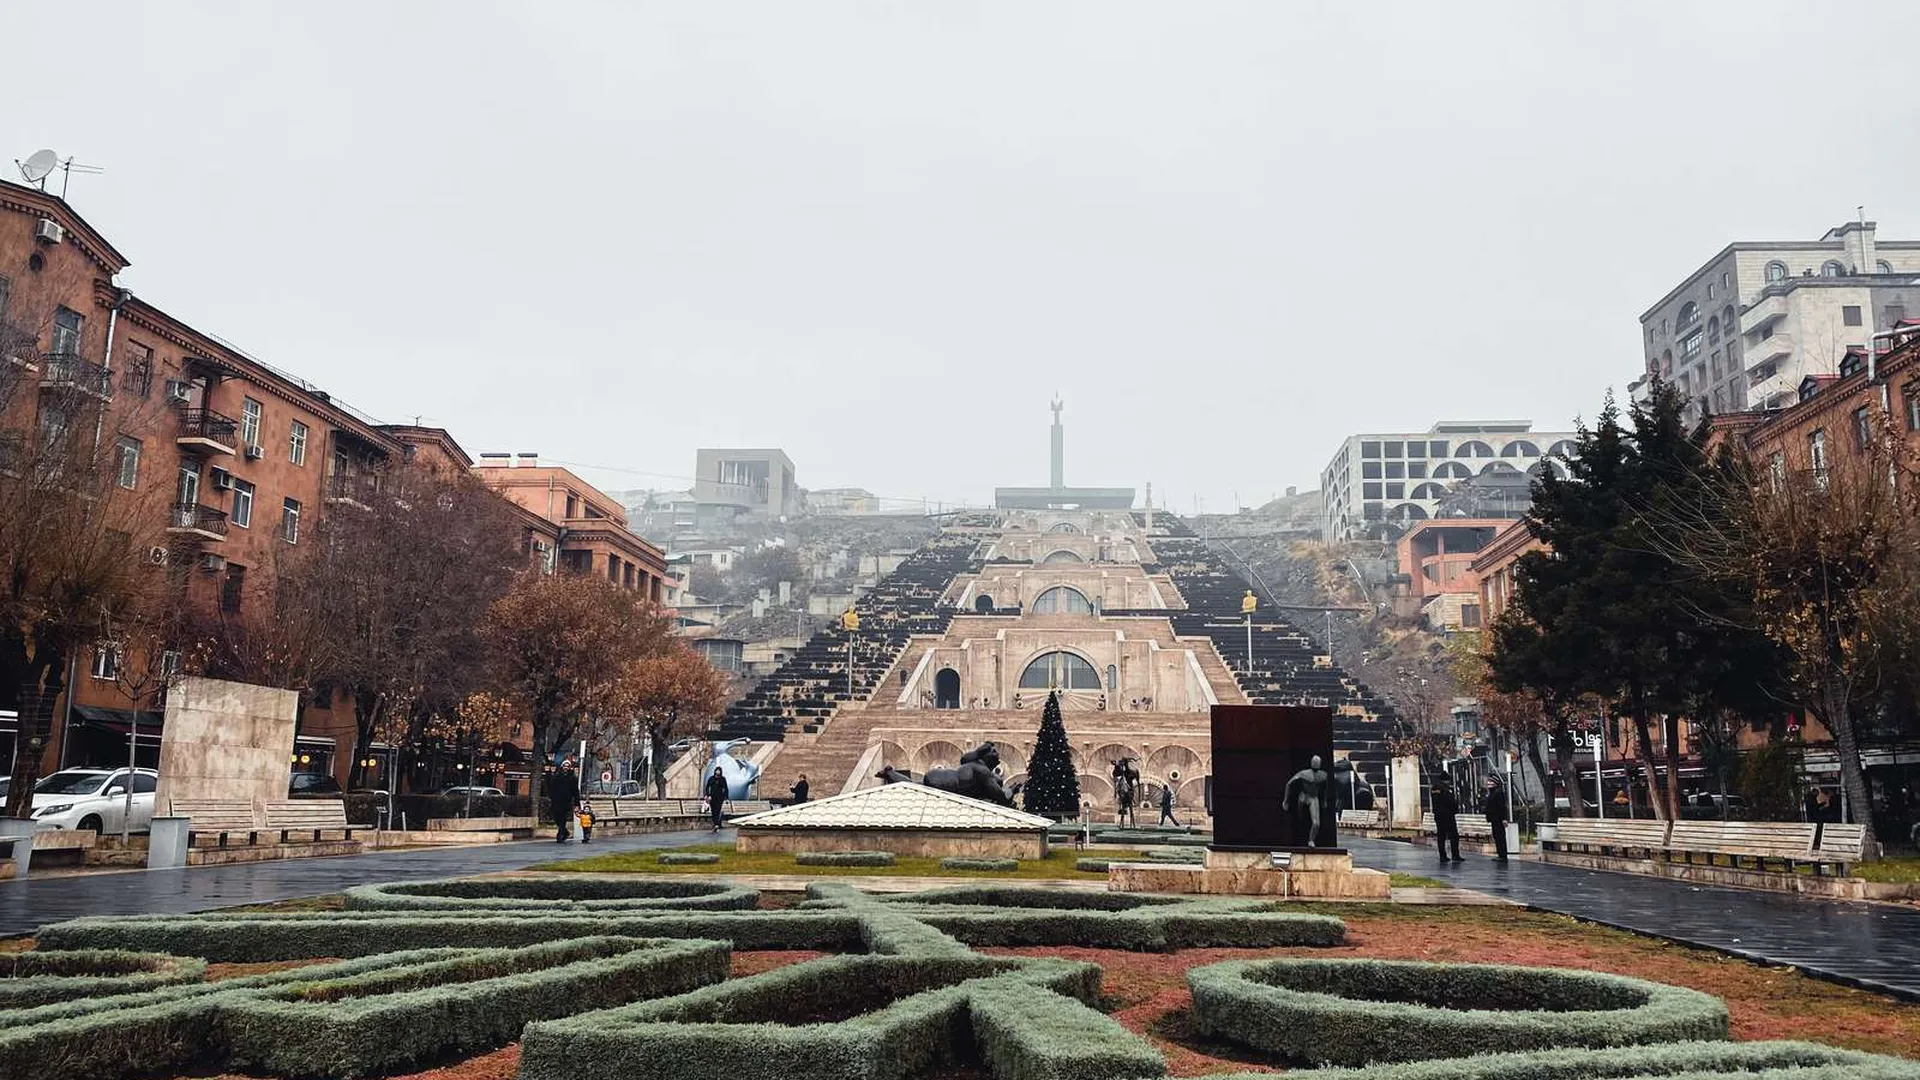 Родственники попросили установить судьбу 20 человек после взрыва в ТЦ в Ереване